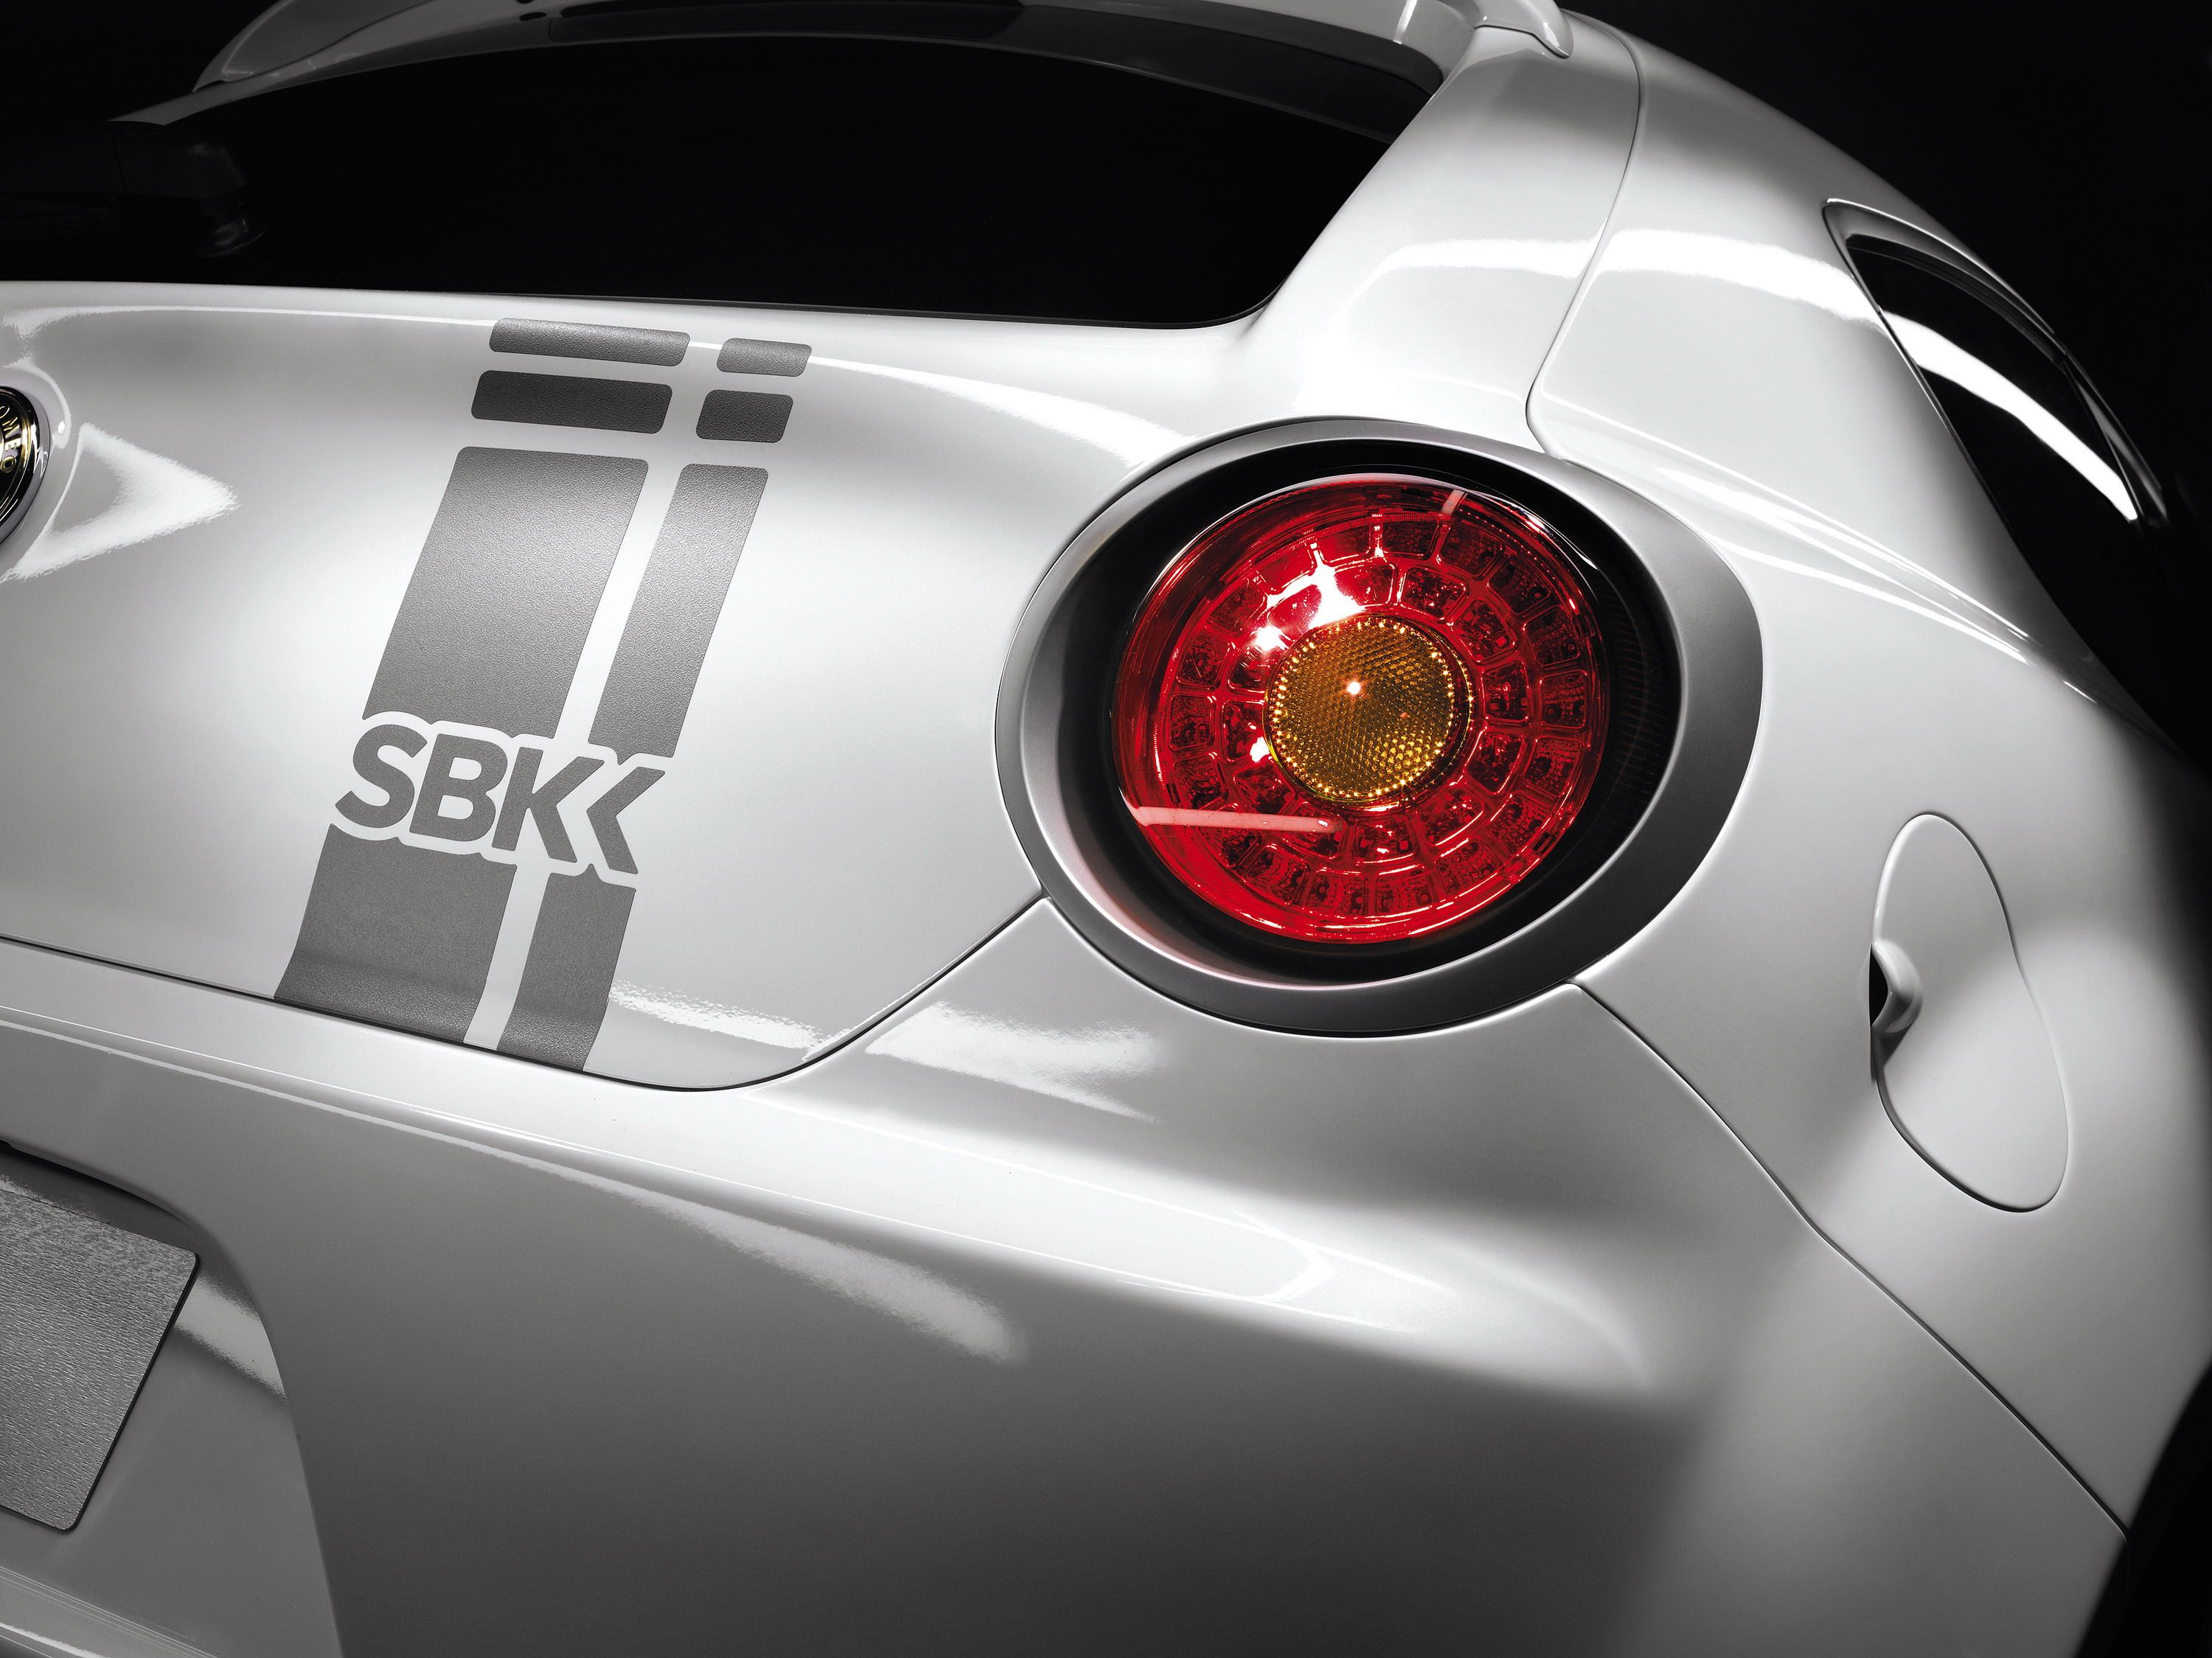 2012 Alfa Romeo Mito SBK Limited Edition